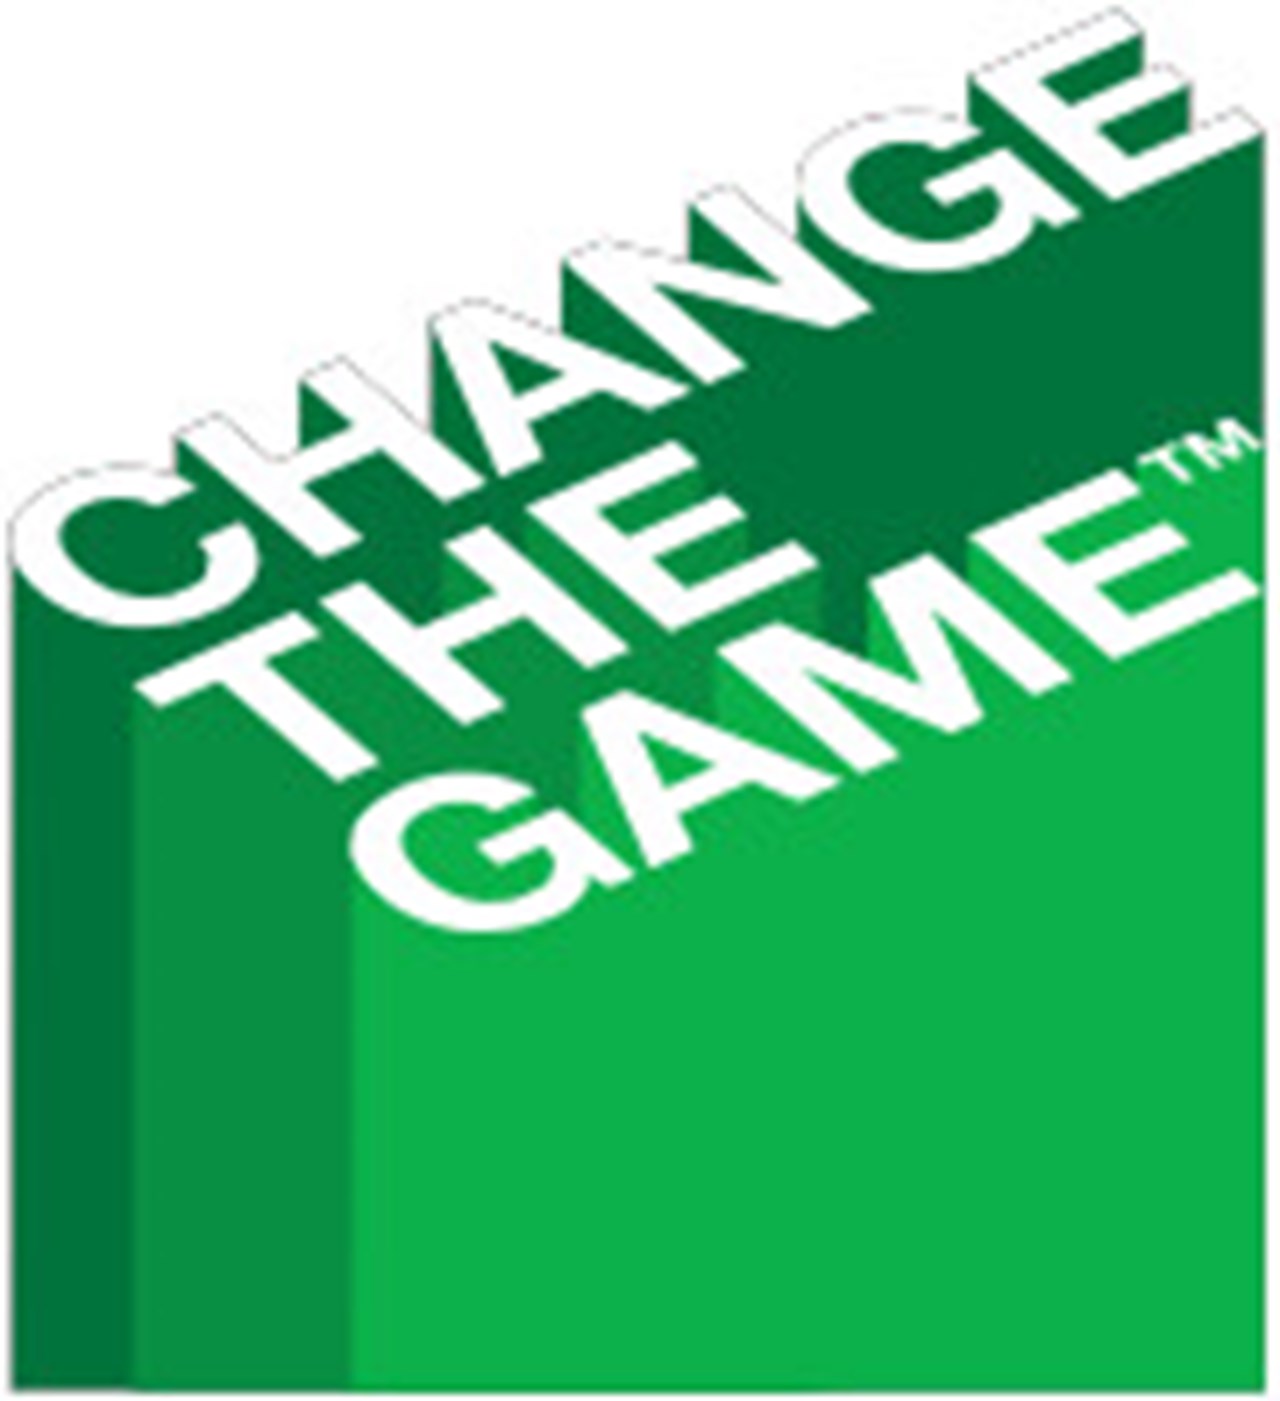 Change the game - vi bygger ett rörelserikt samhälle